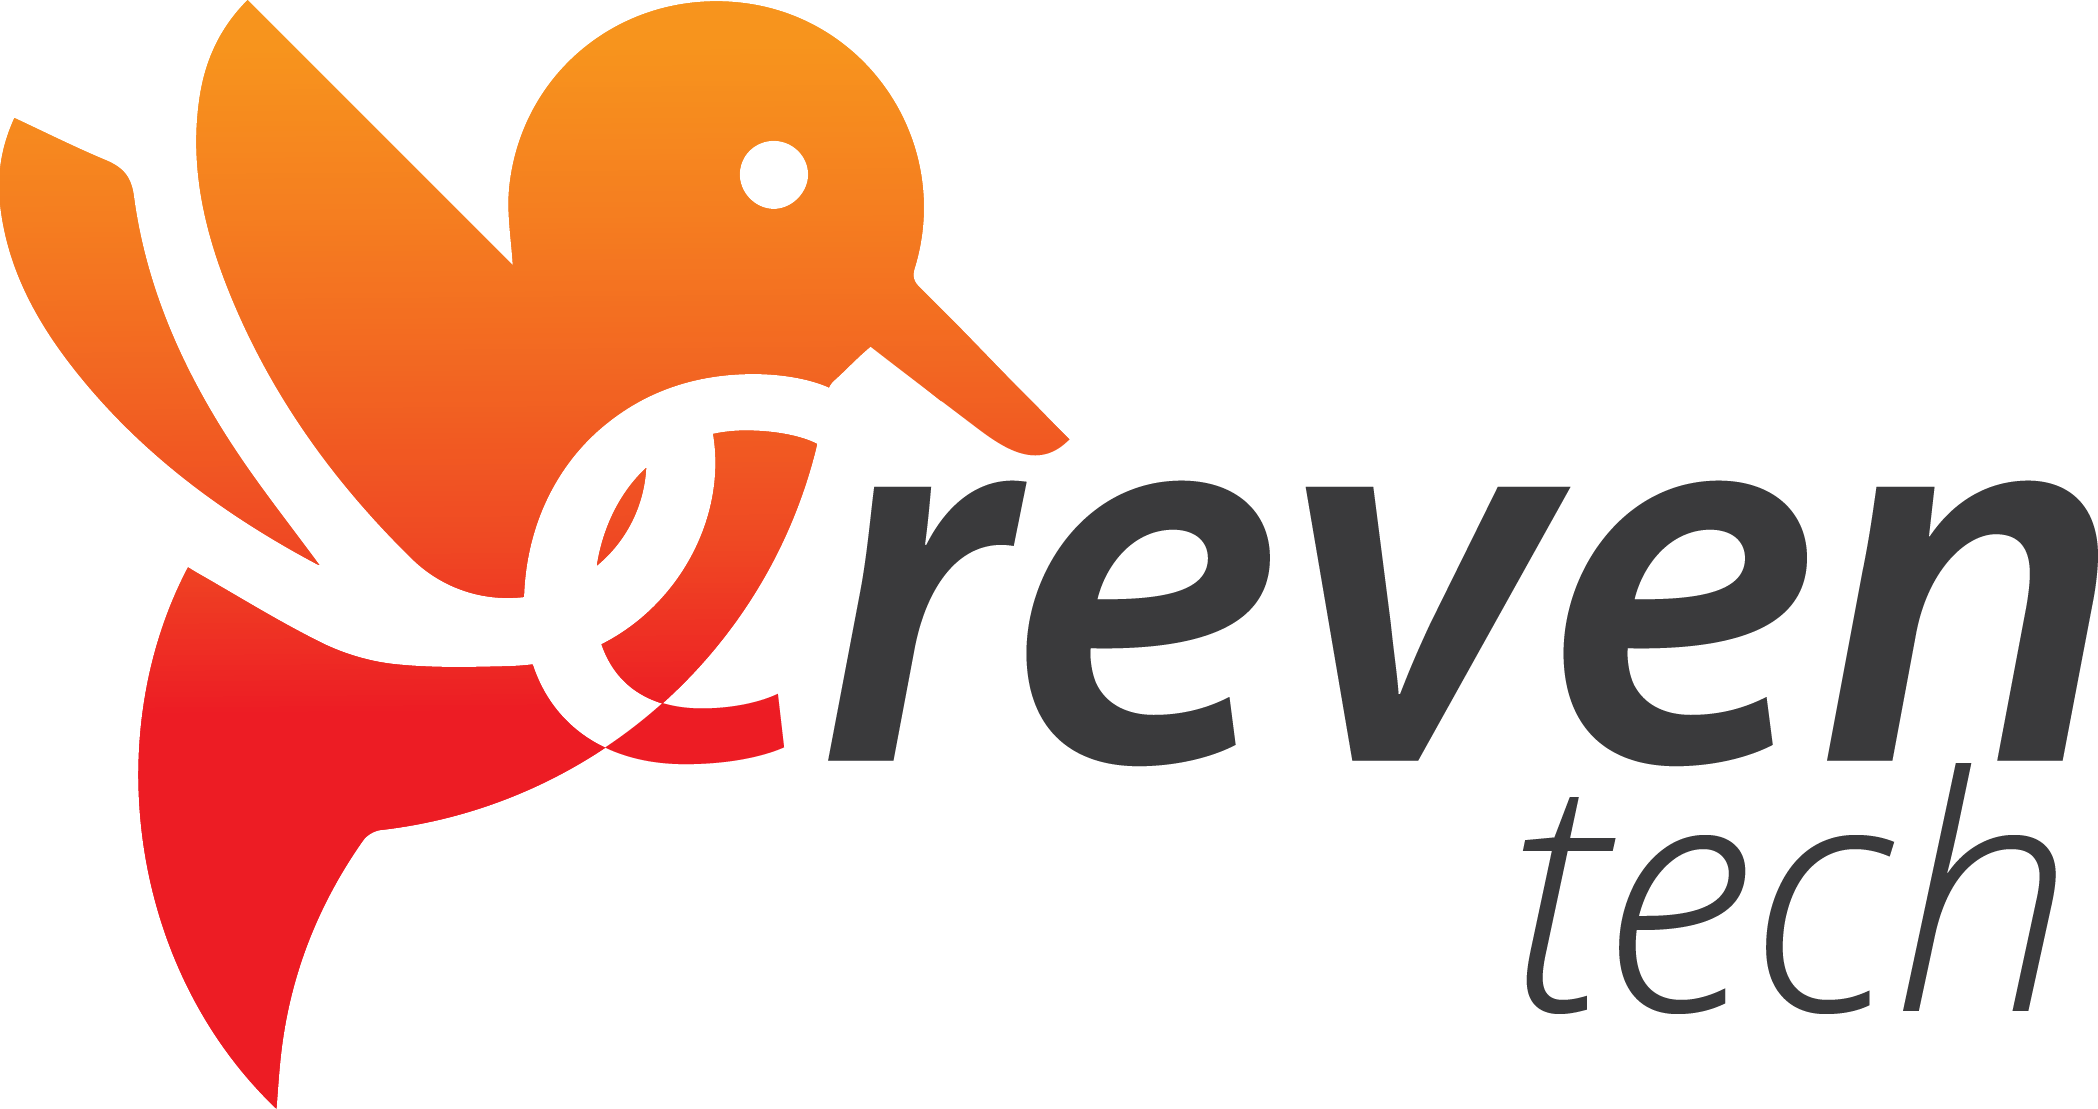 Creven Tech Logo